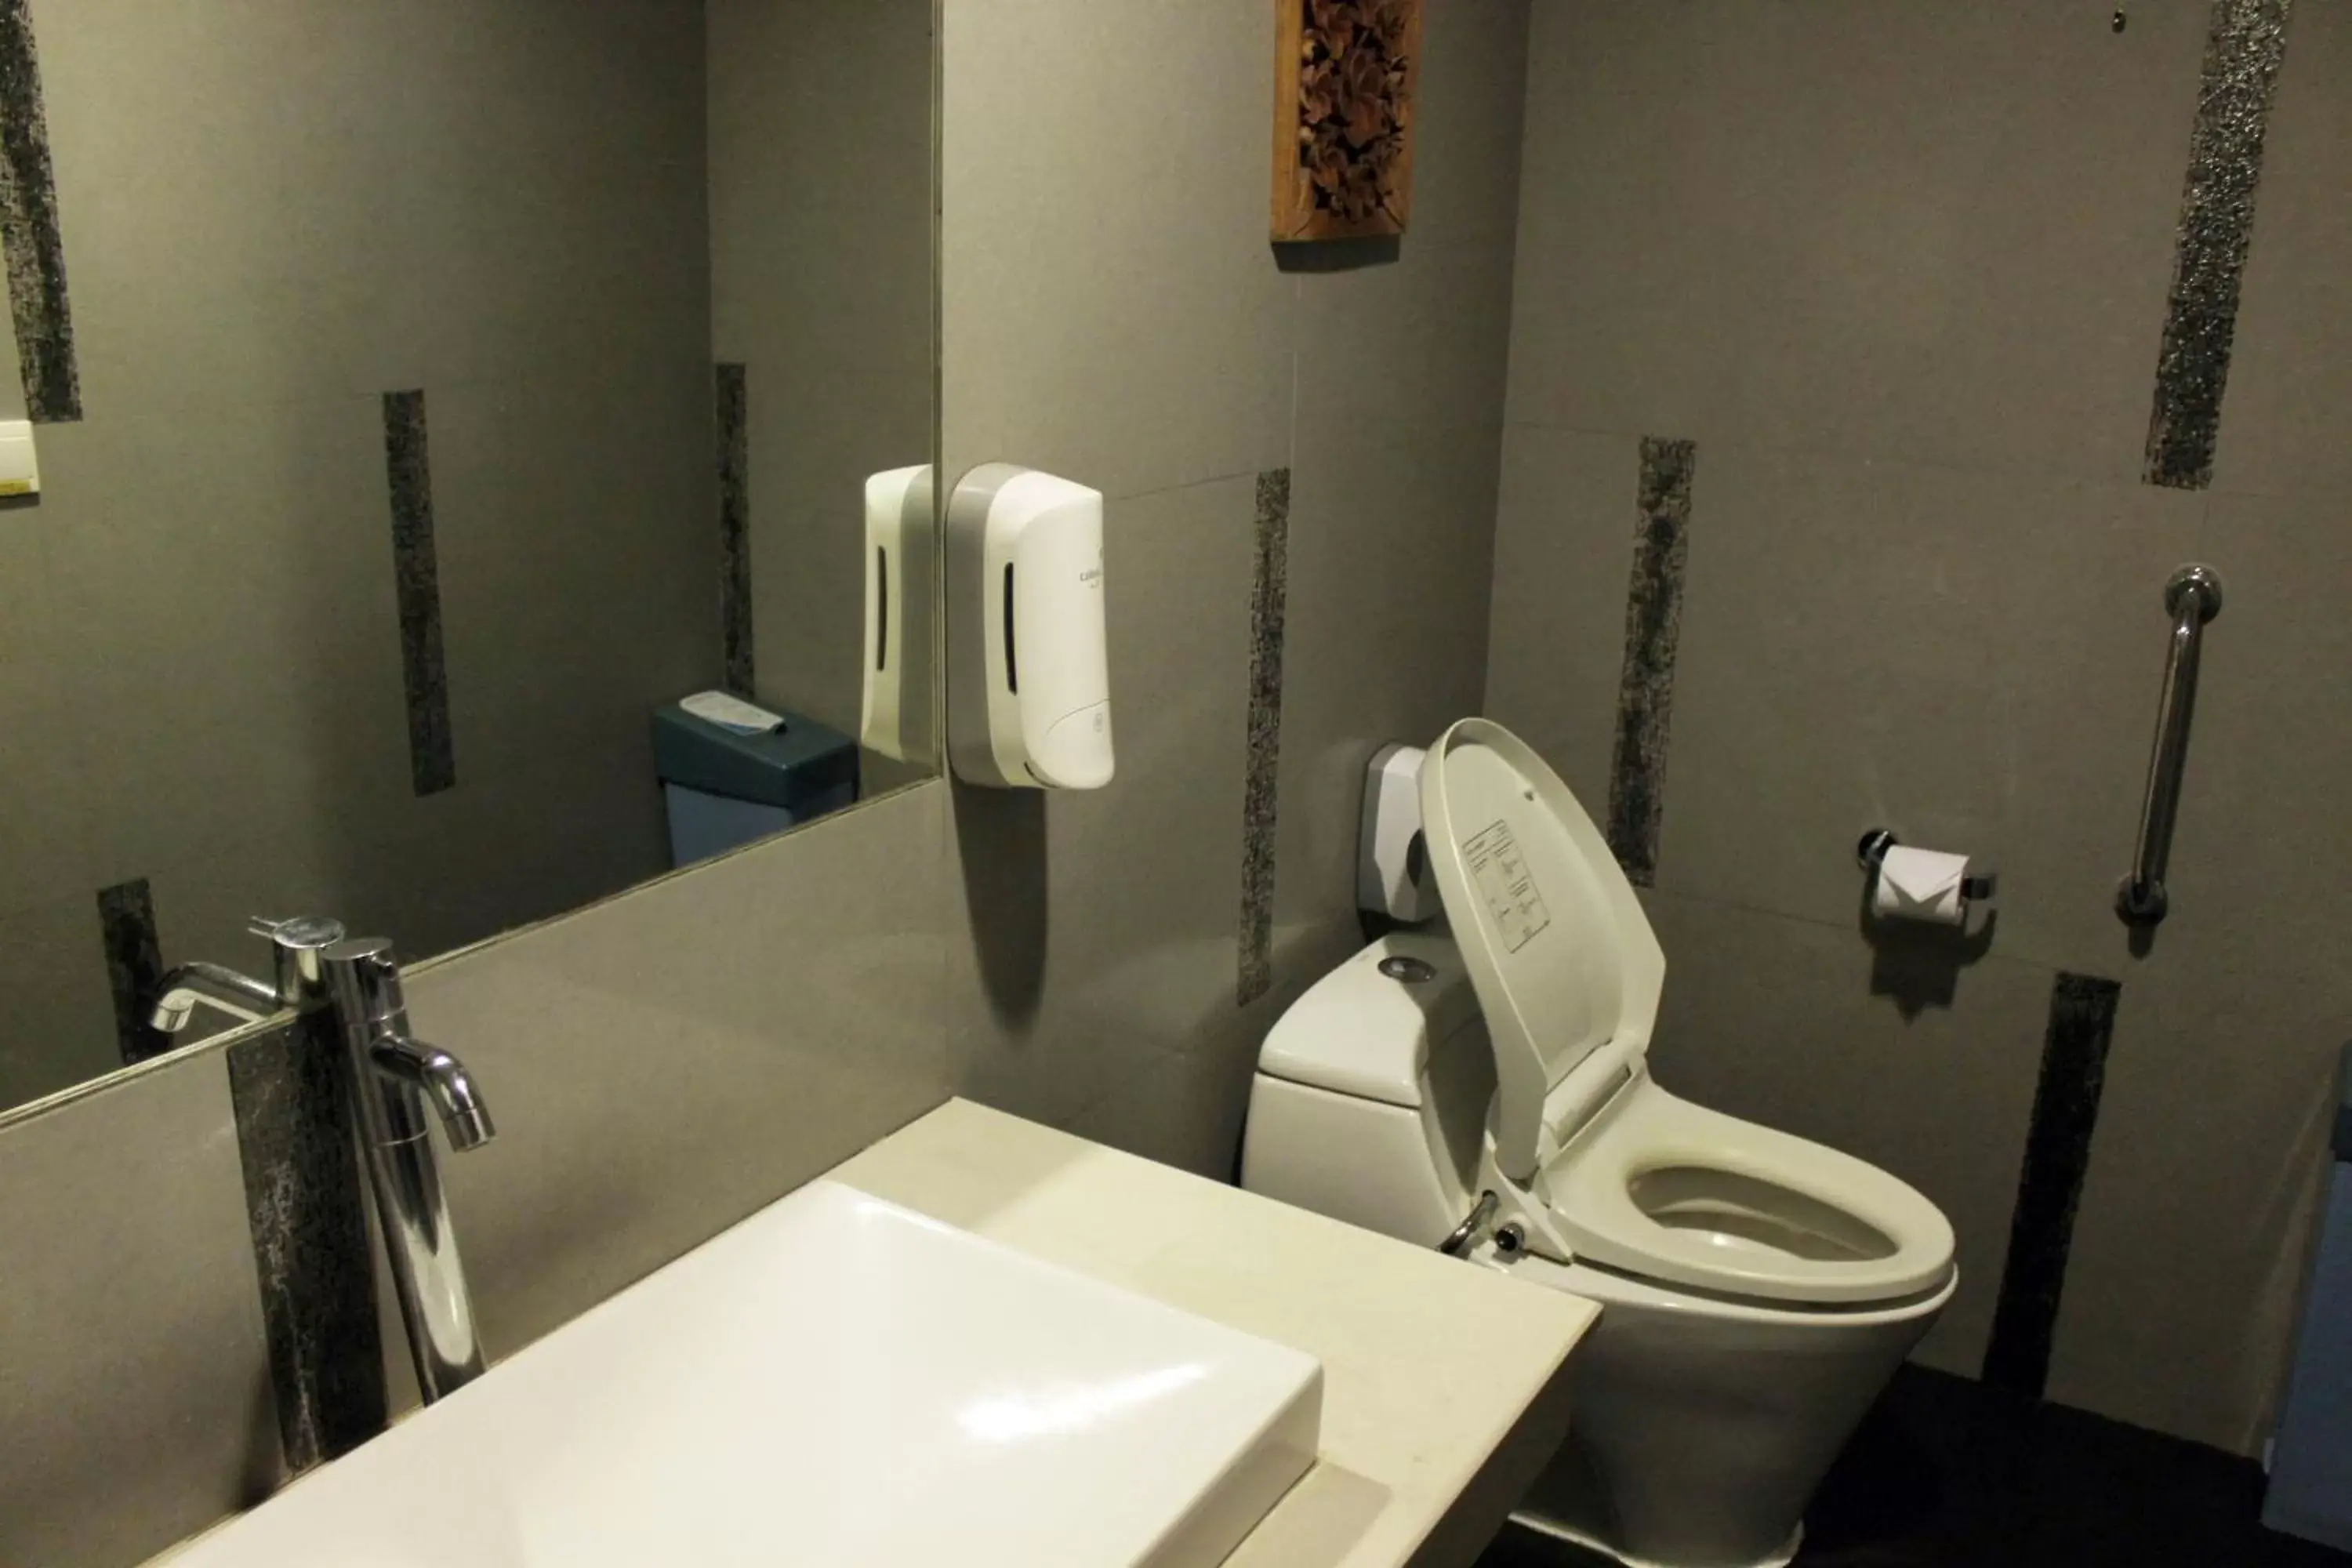 Toilet, Bathroom in Ibis Styles Bali Denpasar